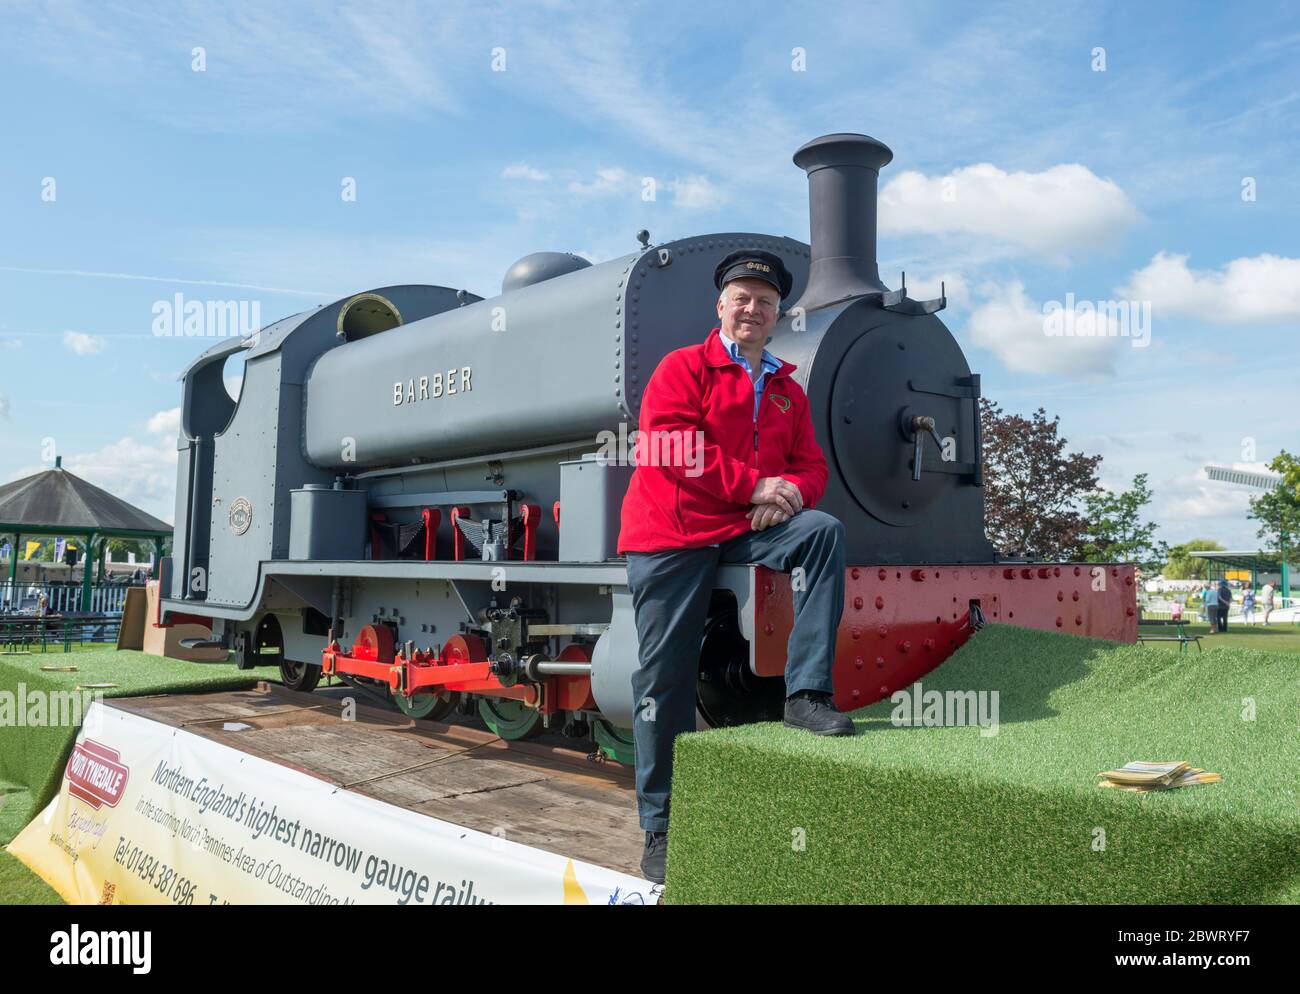 Barber, eine Sattelzuglokomotive der South Tynedale Railway, die auf der Great Yorkshire Show ausgestellt ist Stockfoto